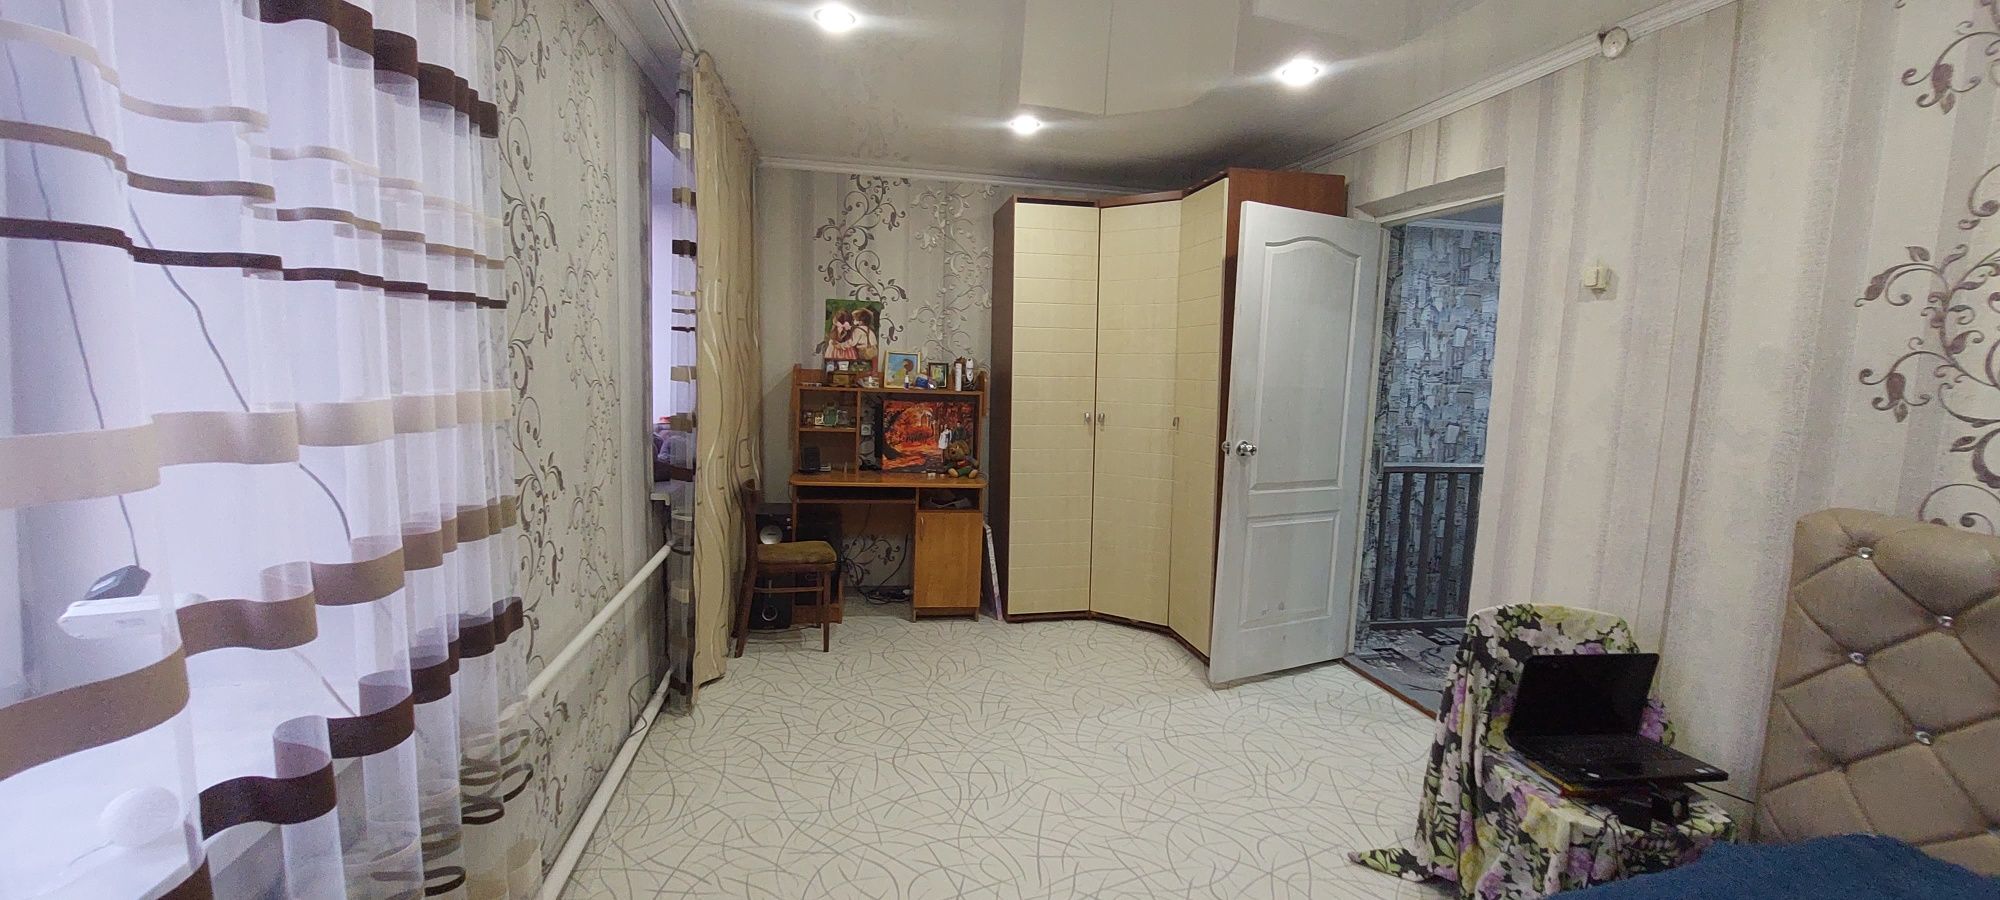 Продам четырёхкомнатную квартиру в Бишкуле